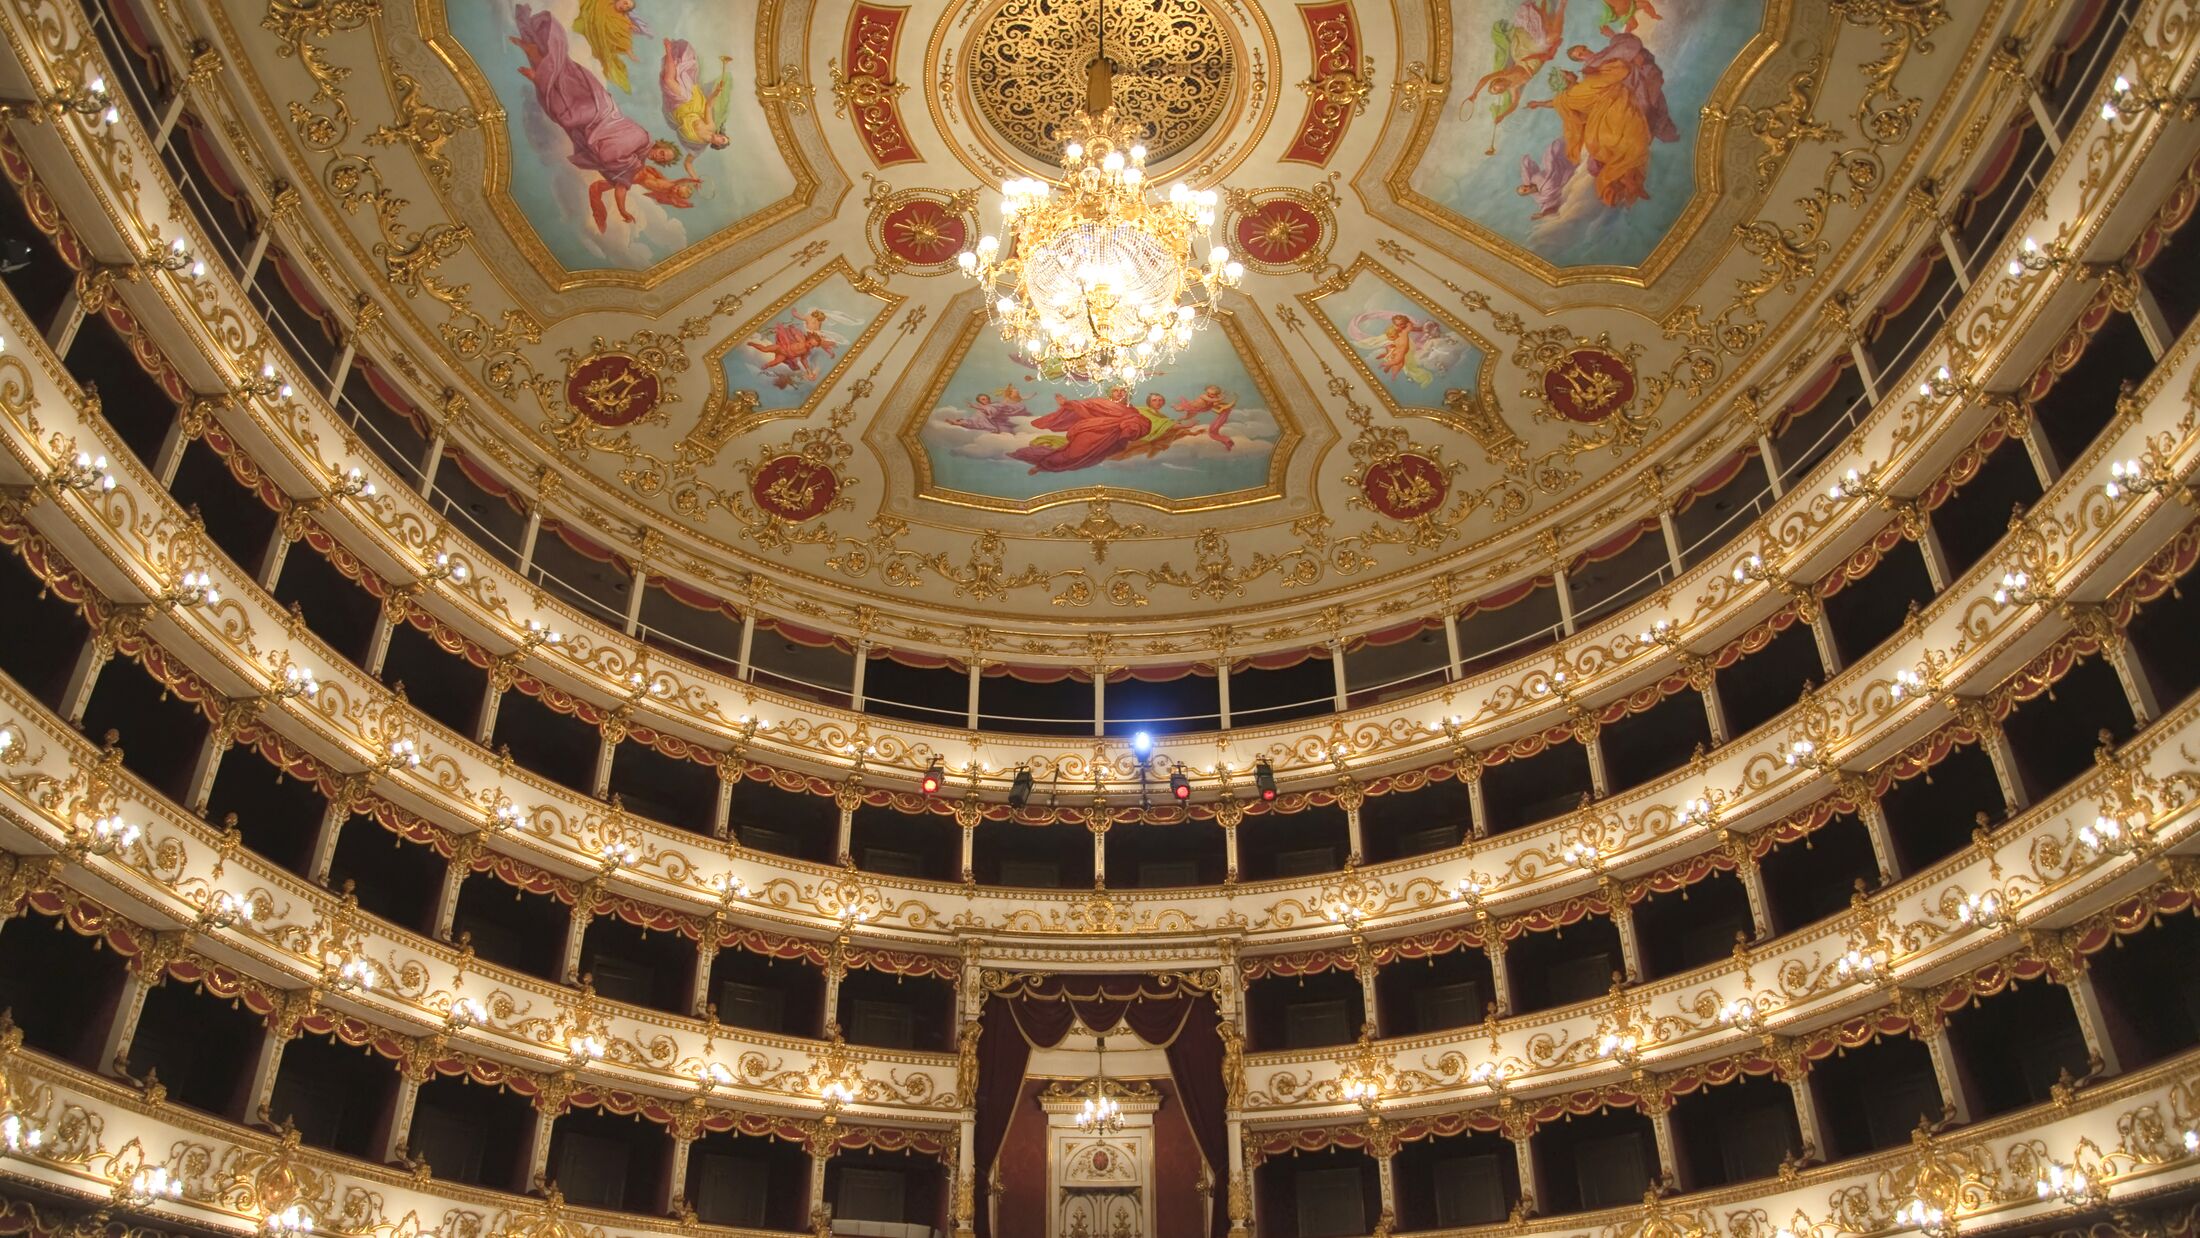 Theater Interior - Reggio Emilia, Italy